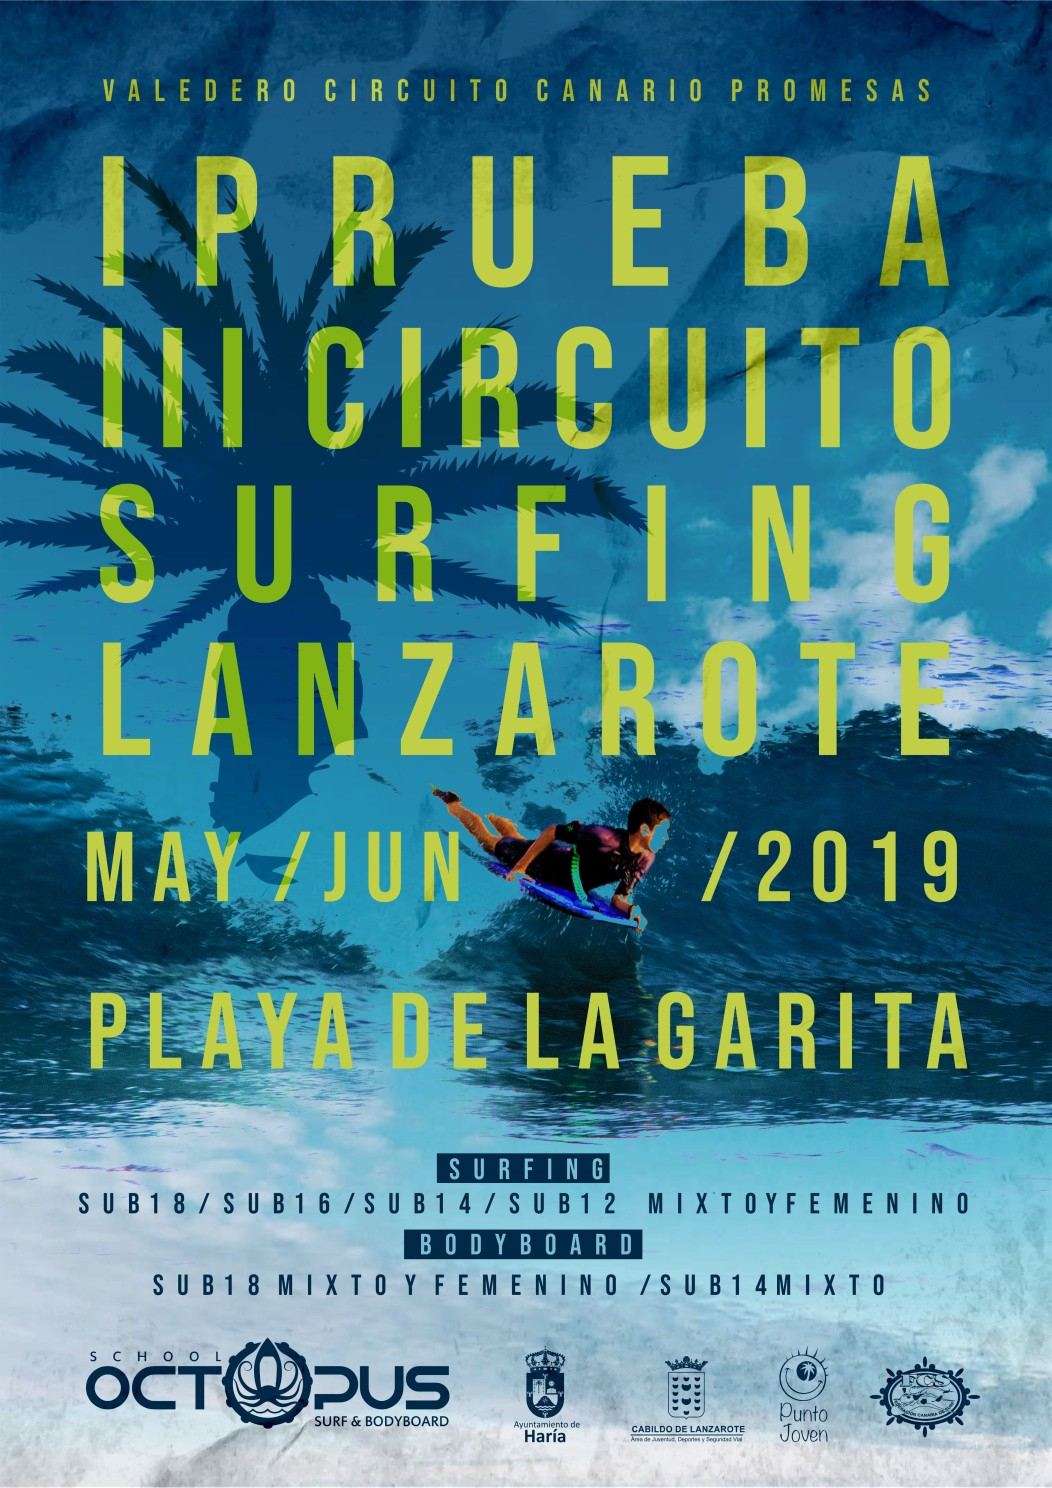 CIRCUITO CANARIO SURF Y BODYBOARD PROMESAS LA GARITA - Register